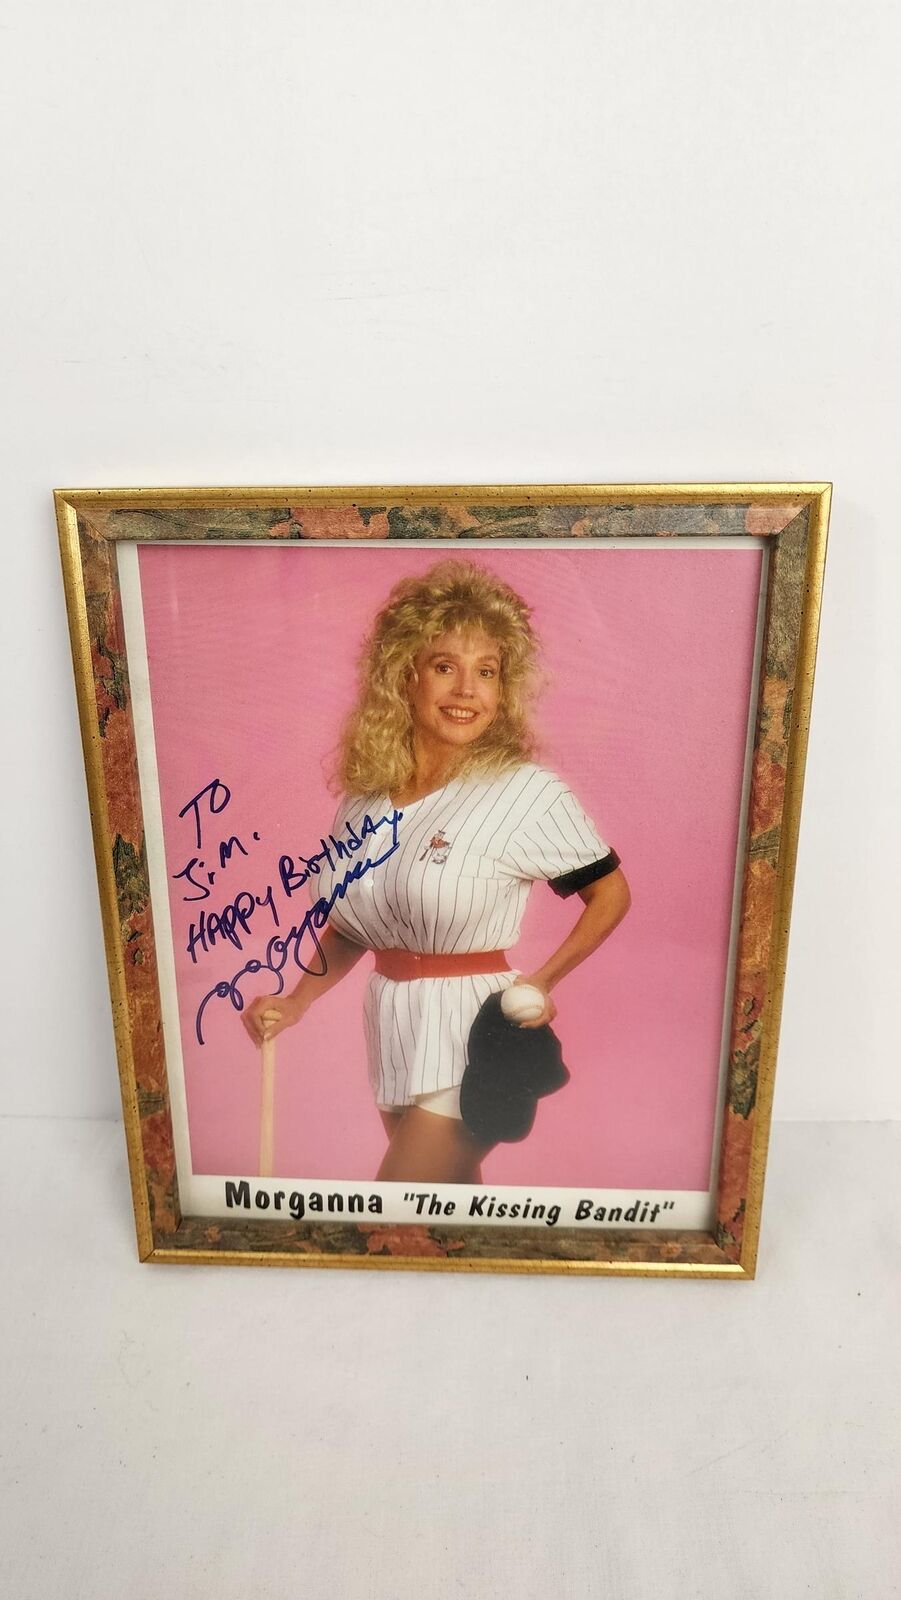 Morganna the Kissing Bandit Baseball Breast Wish Wood Framed Photo - Signed